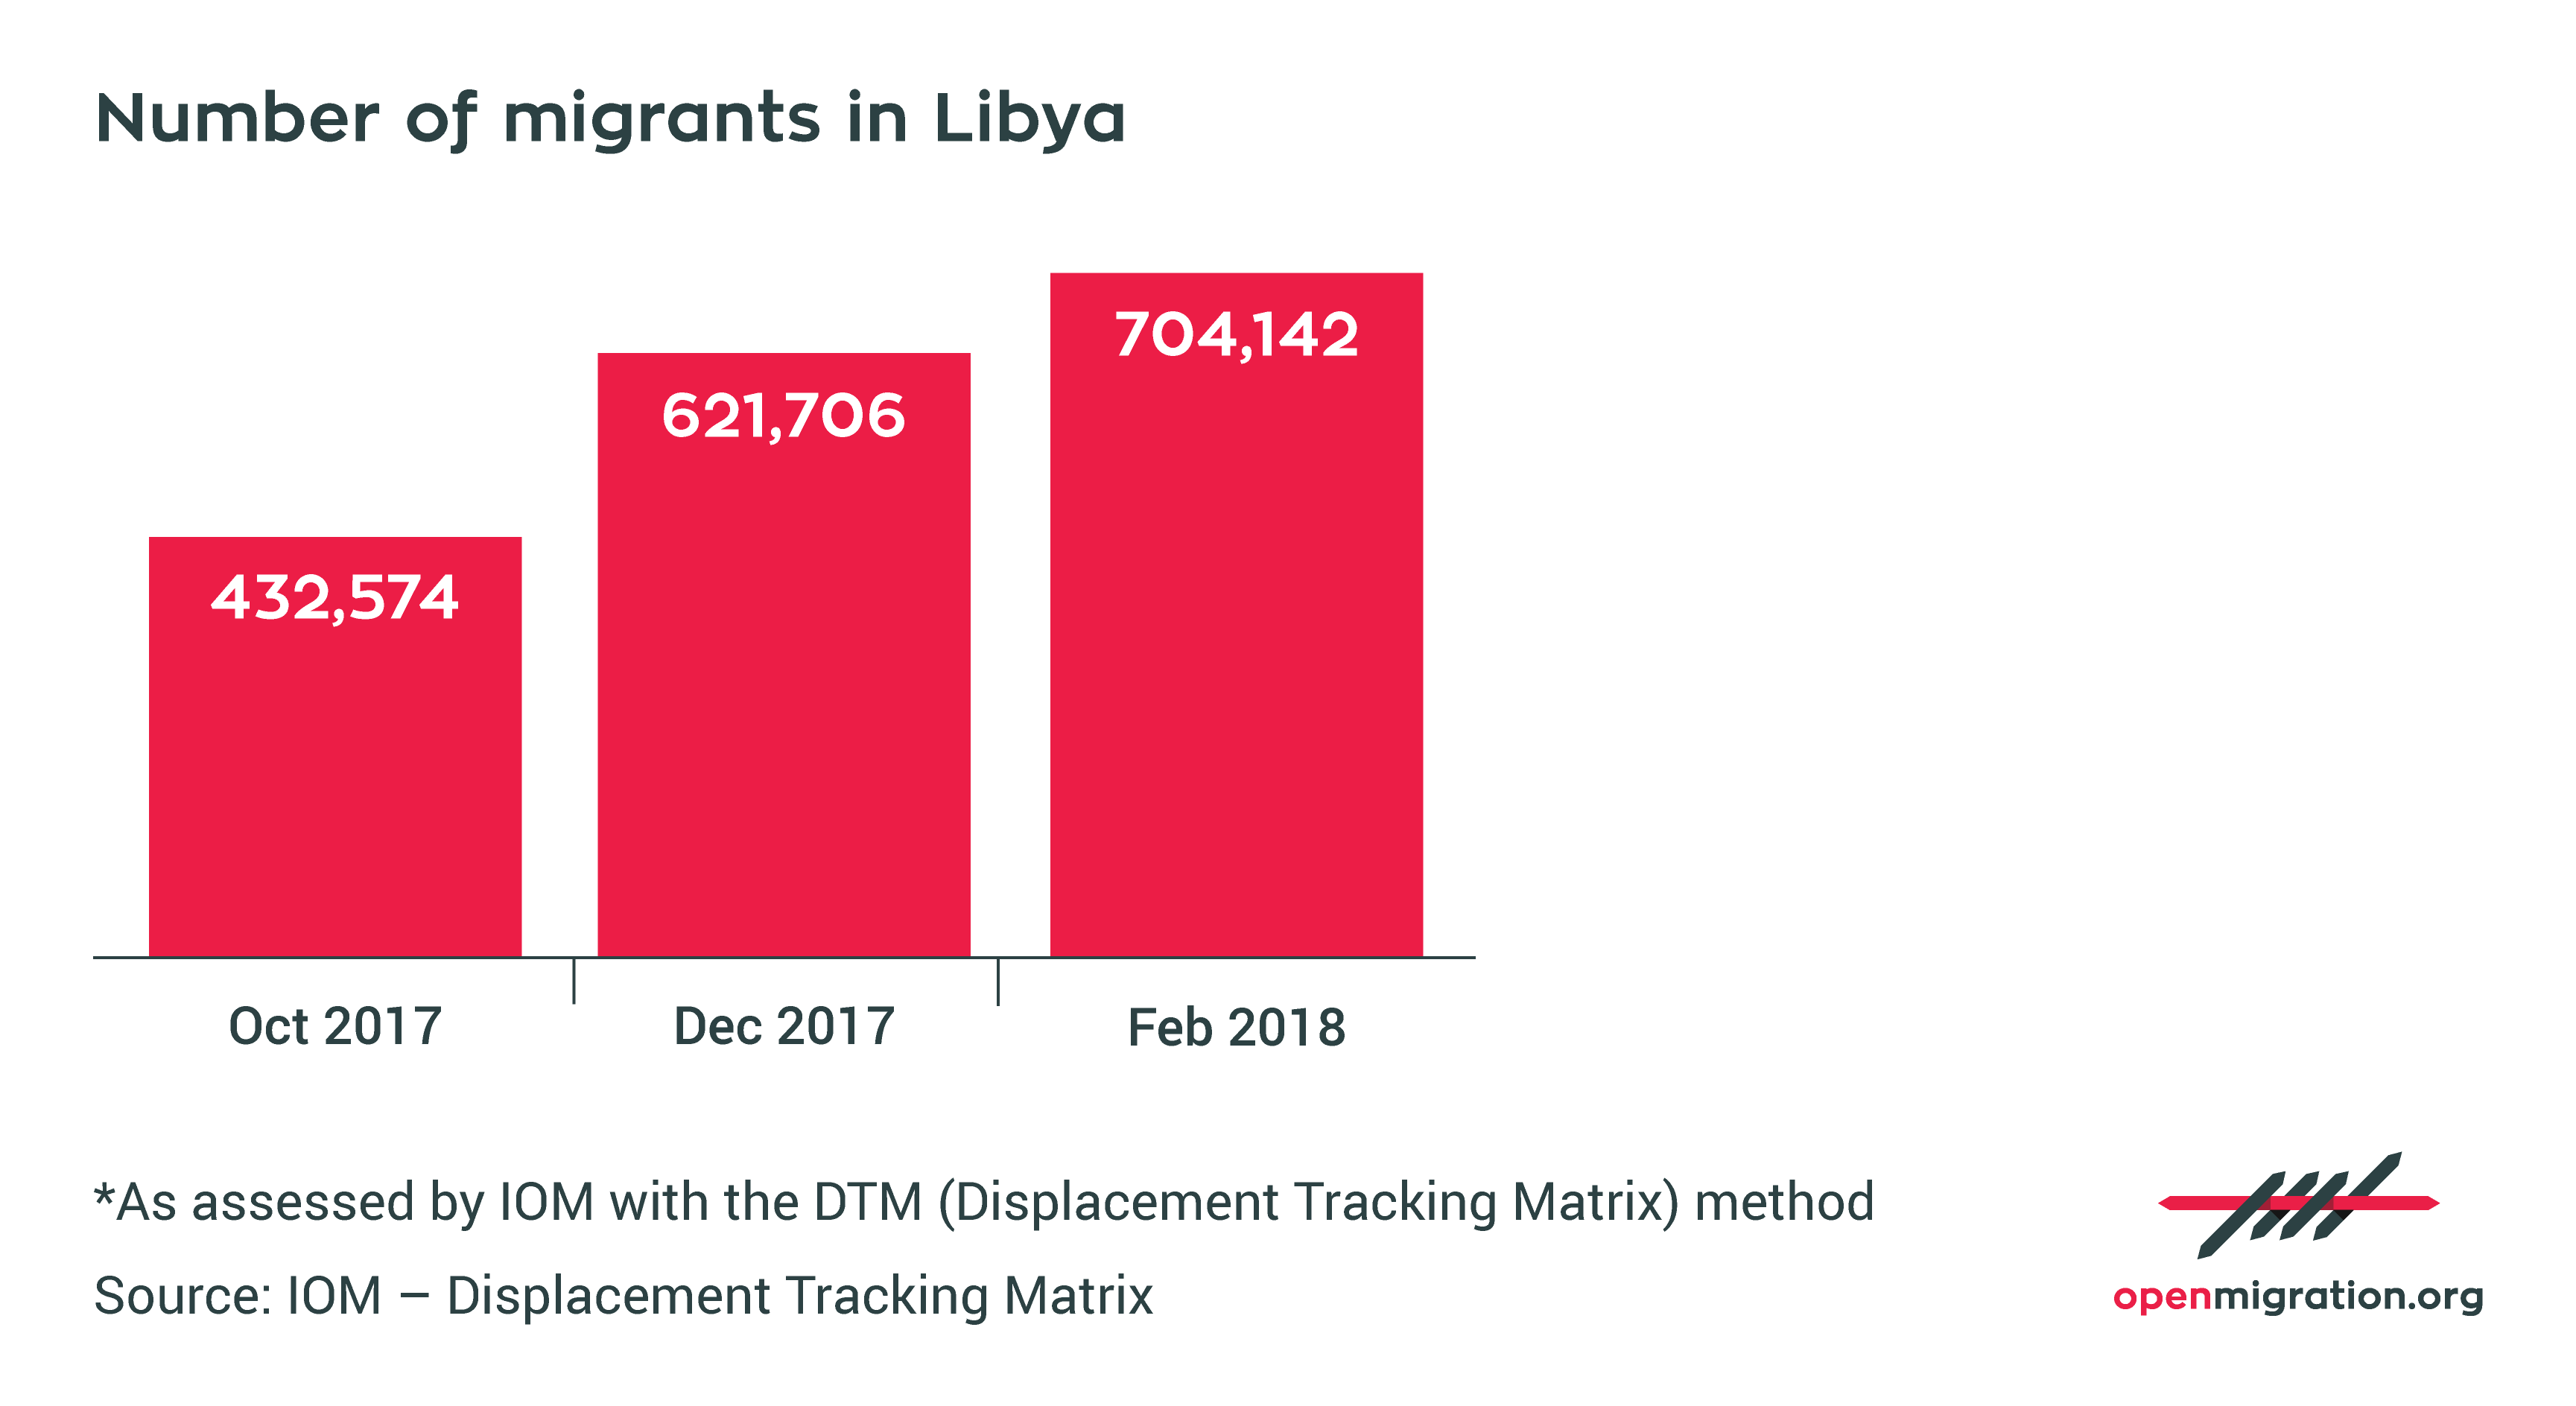 Number of migrants in Libya